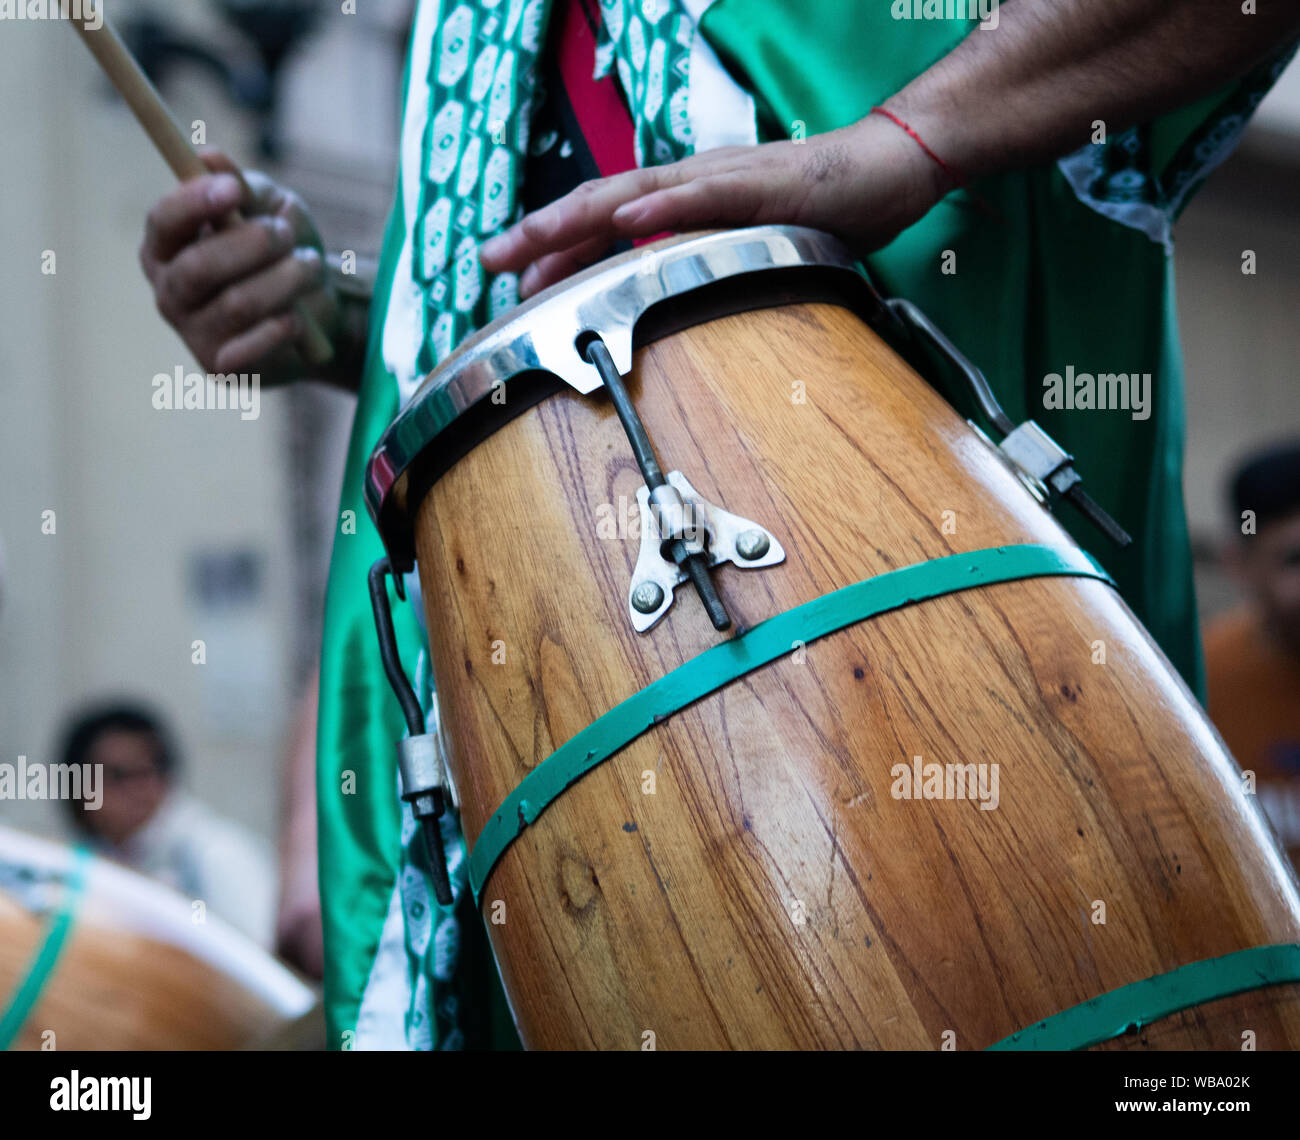 Hombre tocando un tambor candombe Stock Photo